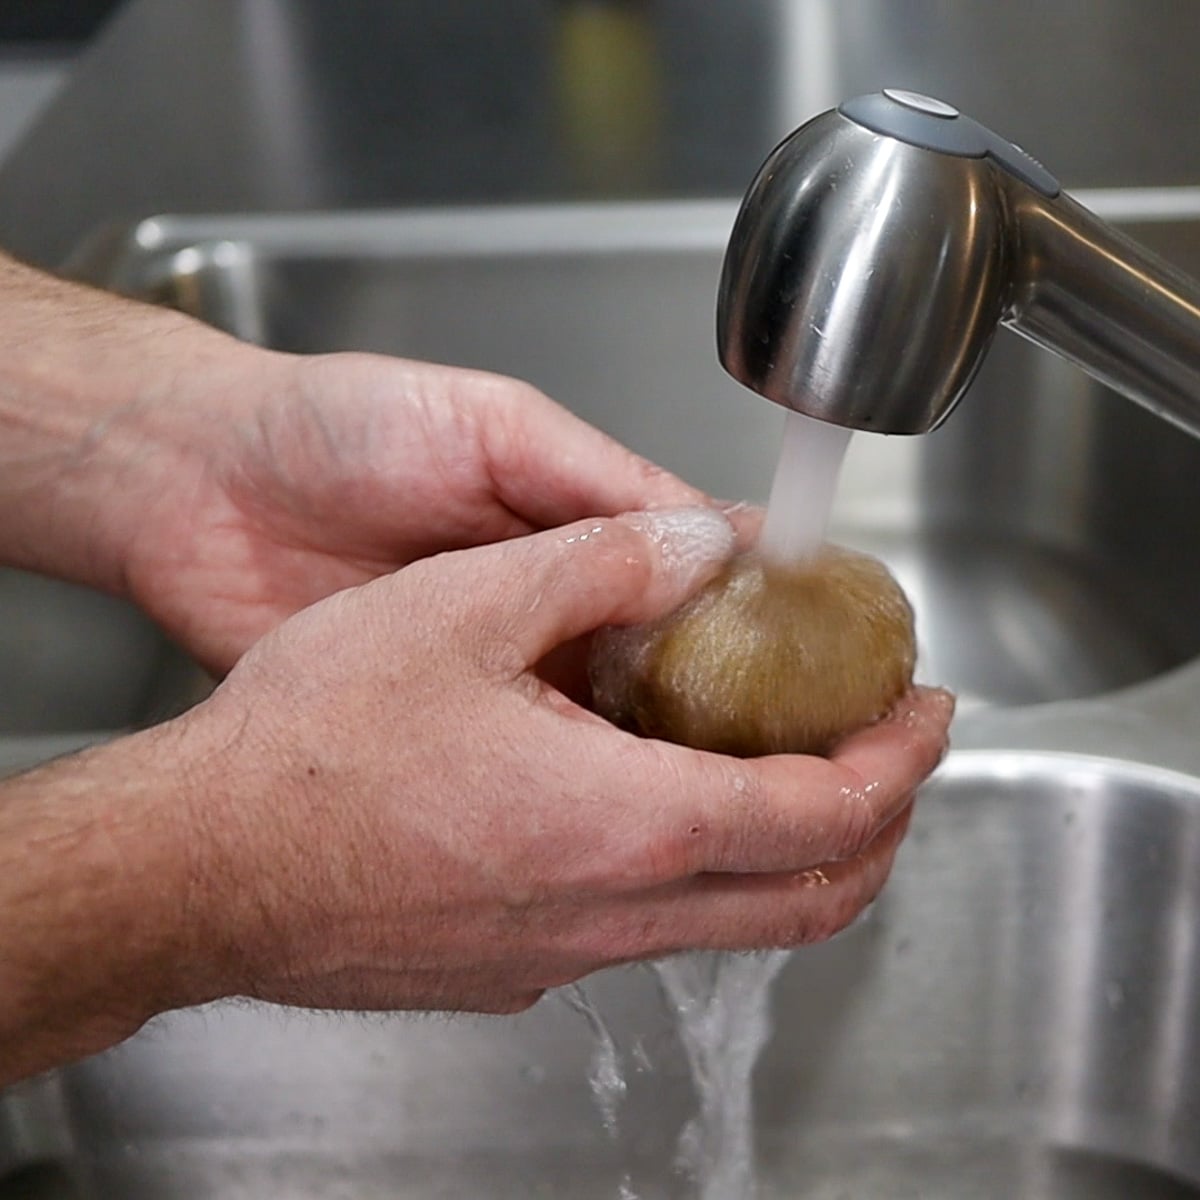 Washing a kiwi fruit under running water
